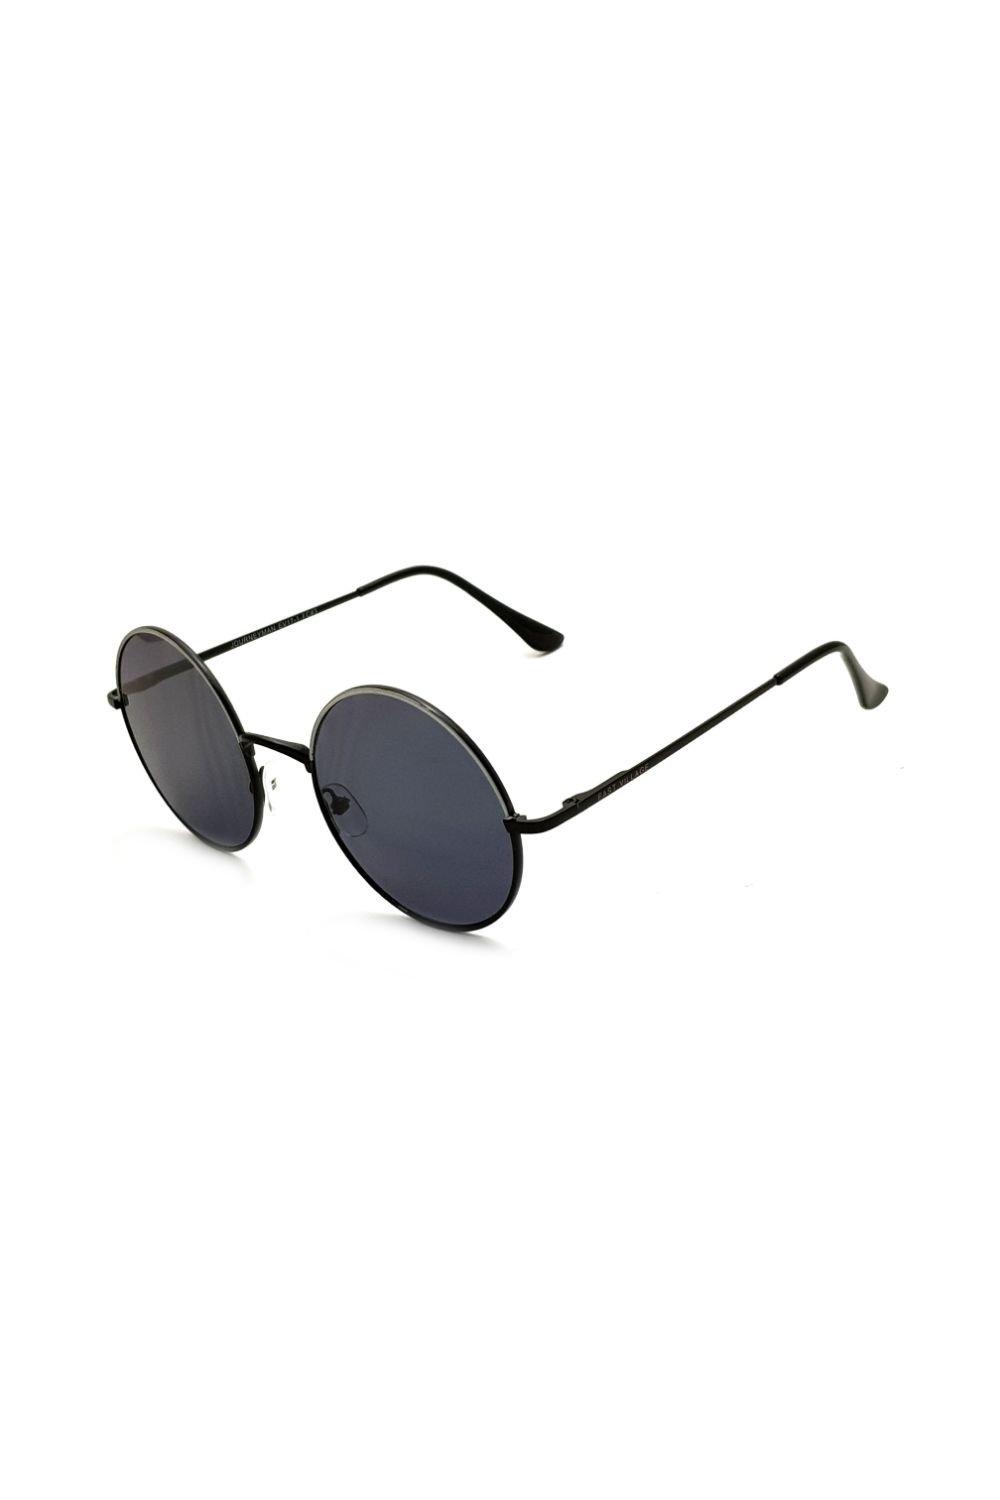 солнцезащитные очки авиаторы jordan east village серебро Круглые солнцезащитные очки Journeyman East Village, черный